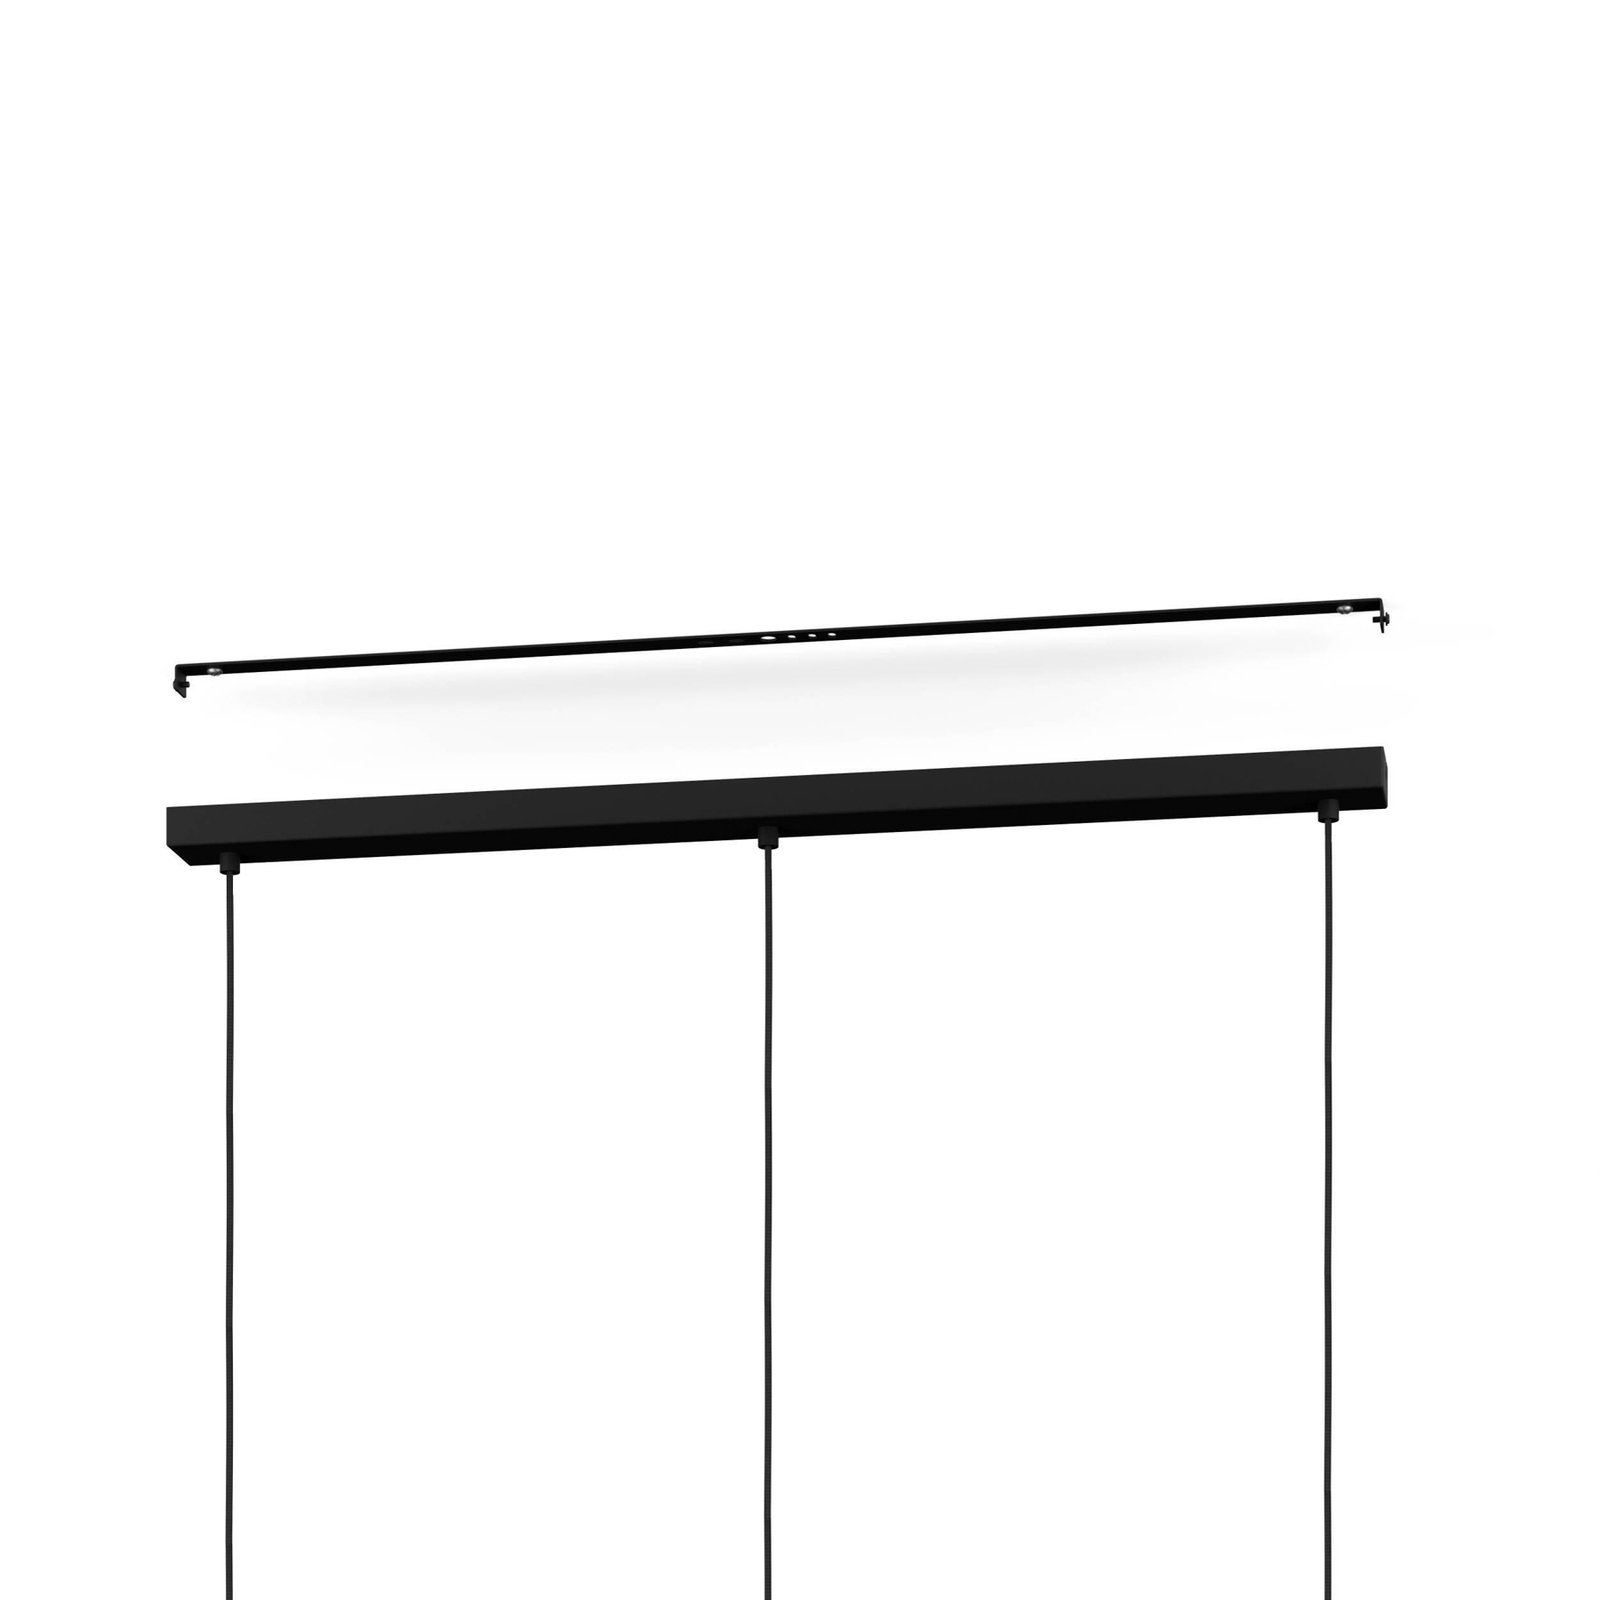 Manby pendant light, length 90 cm, black, 3-bulb, steel